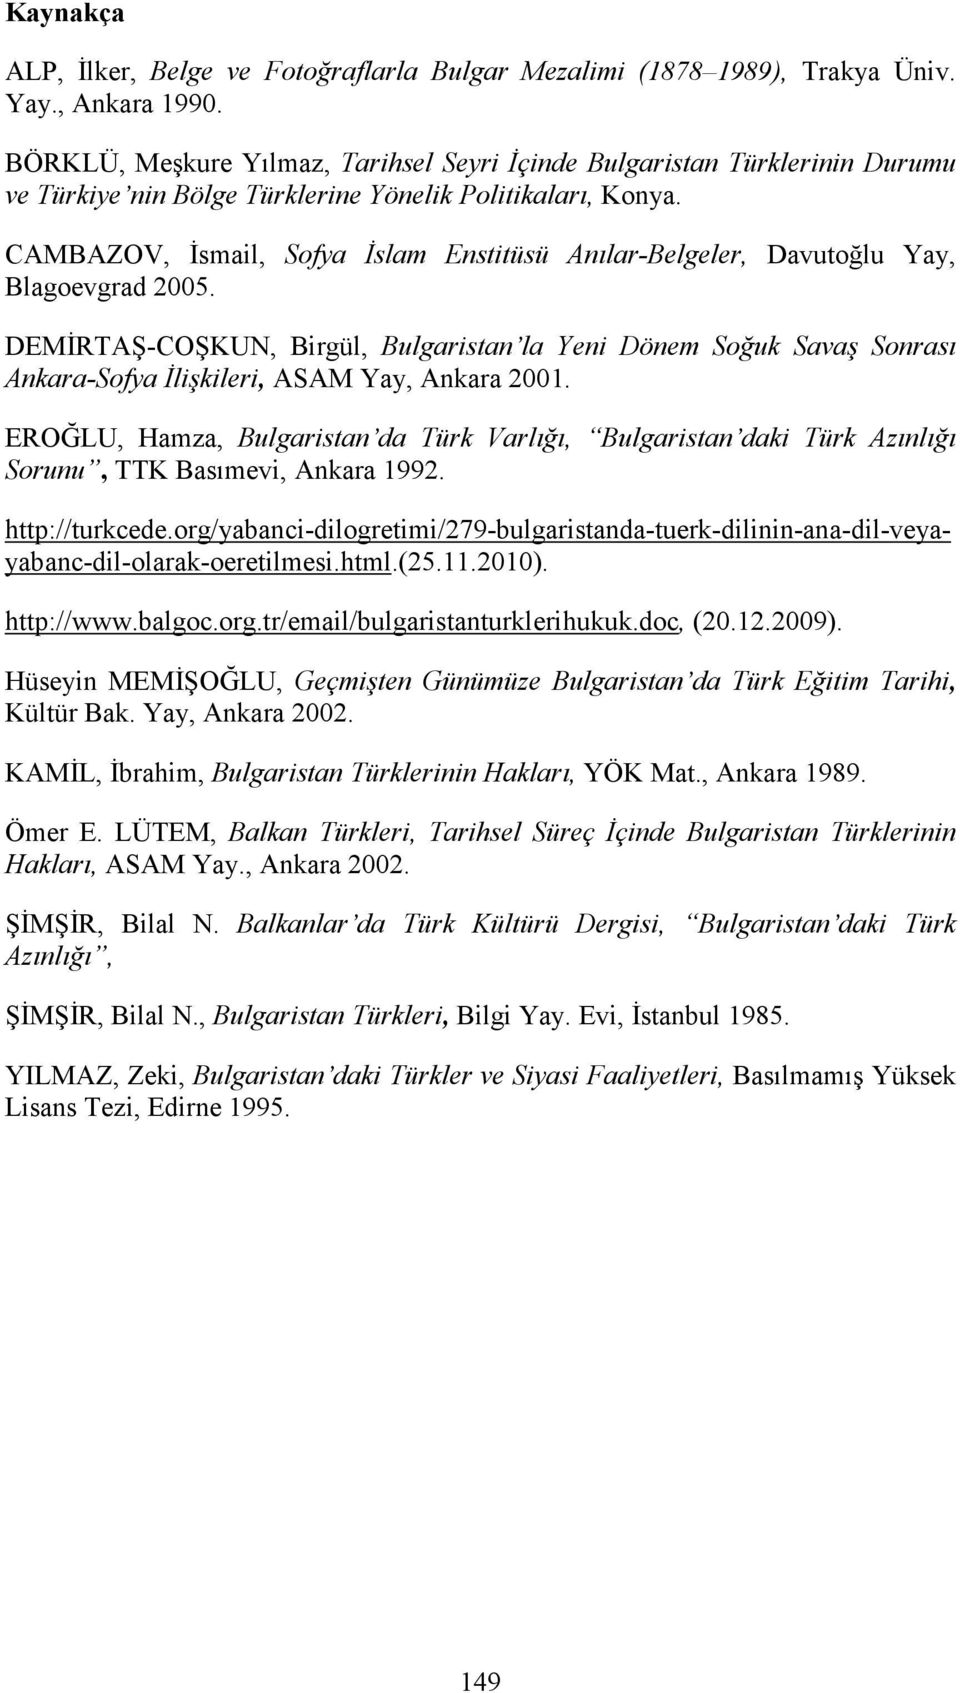 CAMBAZOV, Đsmail, Sofya Đslam Enstitüsü Anılar-Belgeler, Davutoğlu Yay, Blagoevgrad 2005.